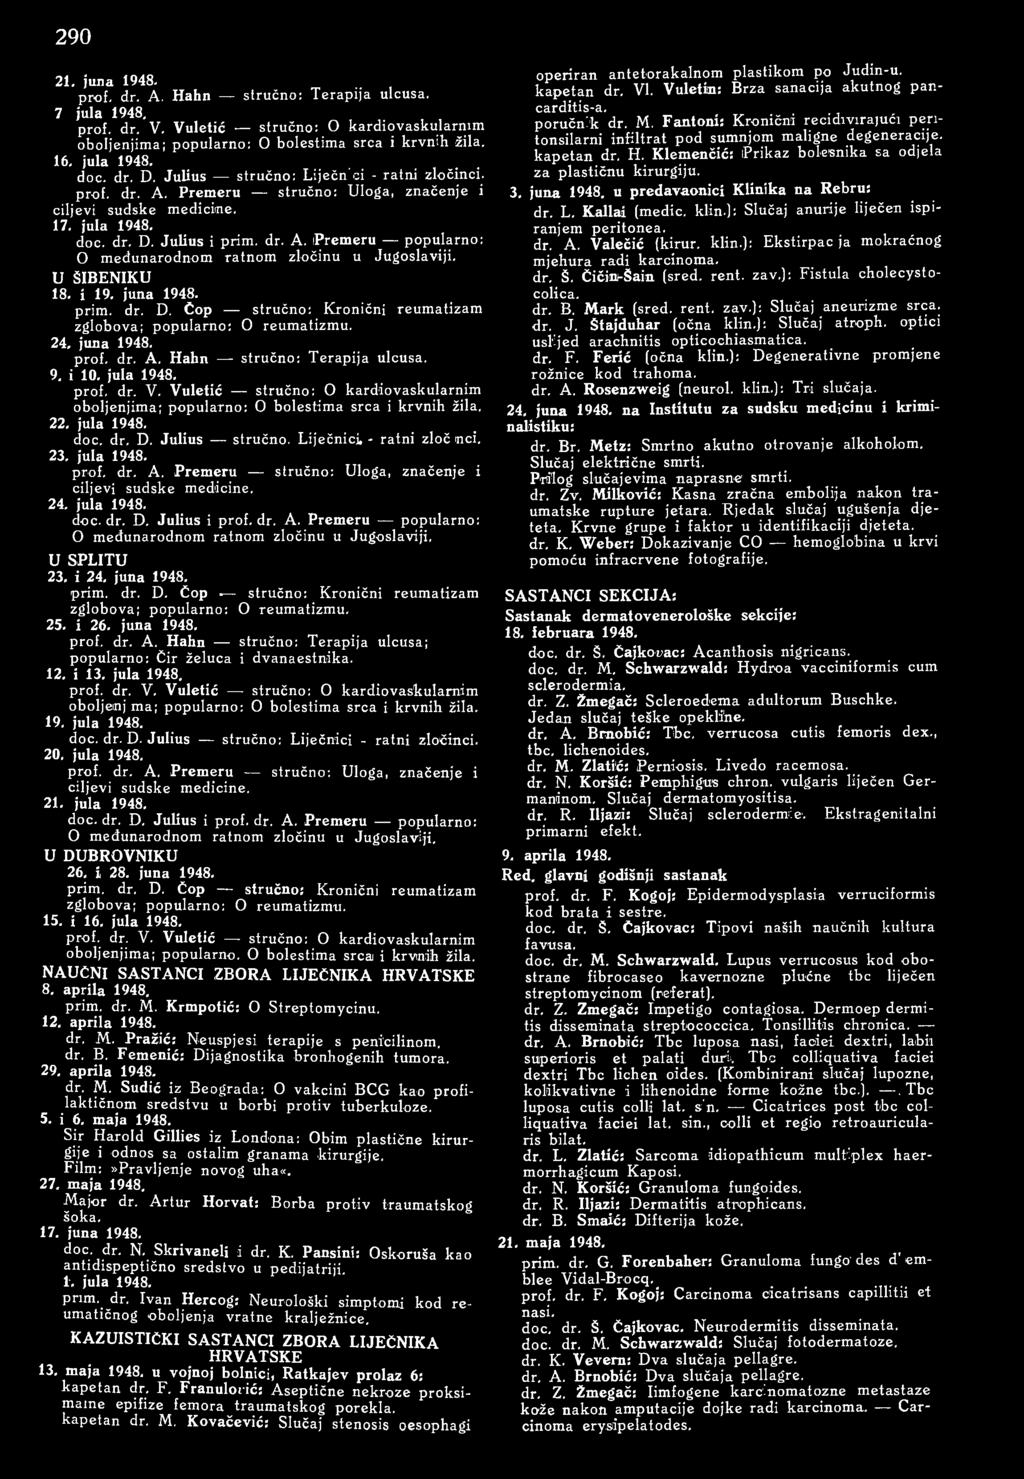 U ŠIBENIKU 18. i 19. juna 1948. prim. dr. D. Čop stručno: Kronični reumatizam zglobova; popularno: О reumatizmu. 24. juna 1948. prof. dr. A. Hahn stručno: Terapija ulcusa. 9. i 10. jula 1948. prof. dr. V.